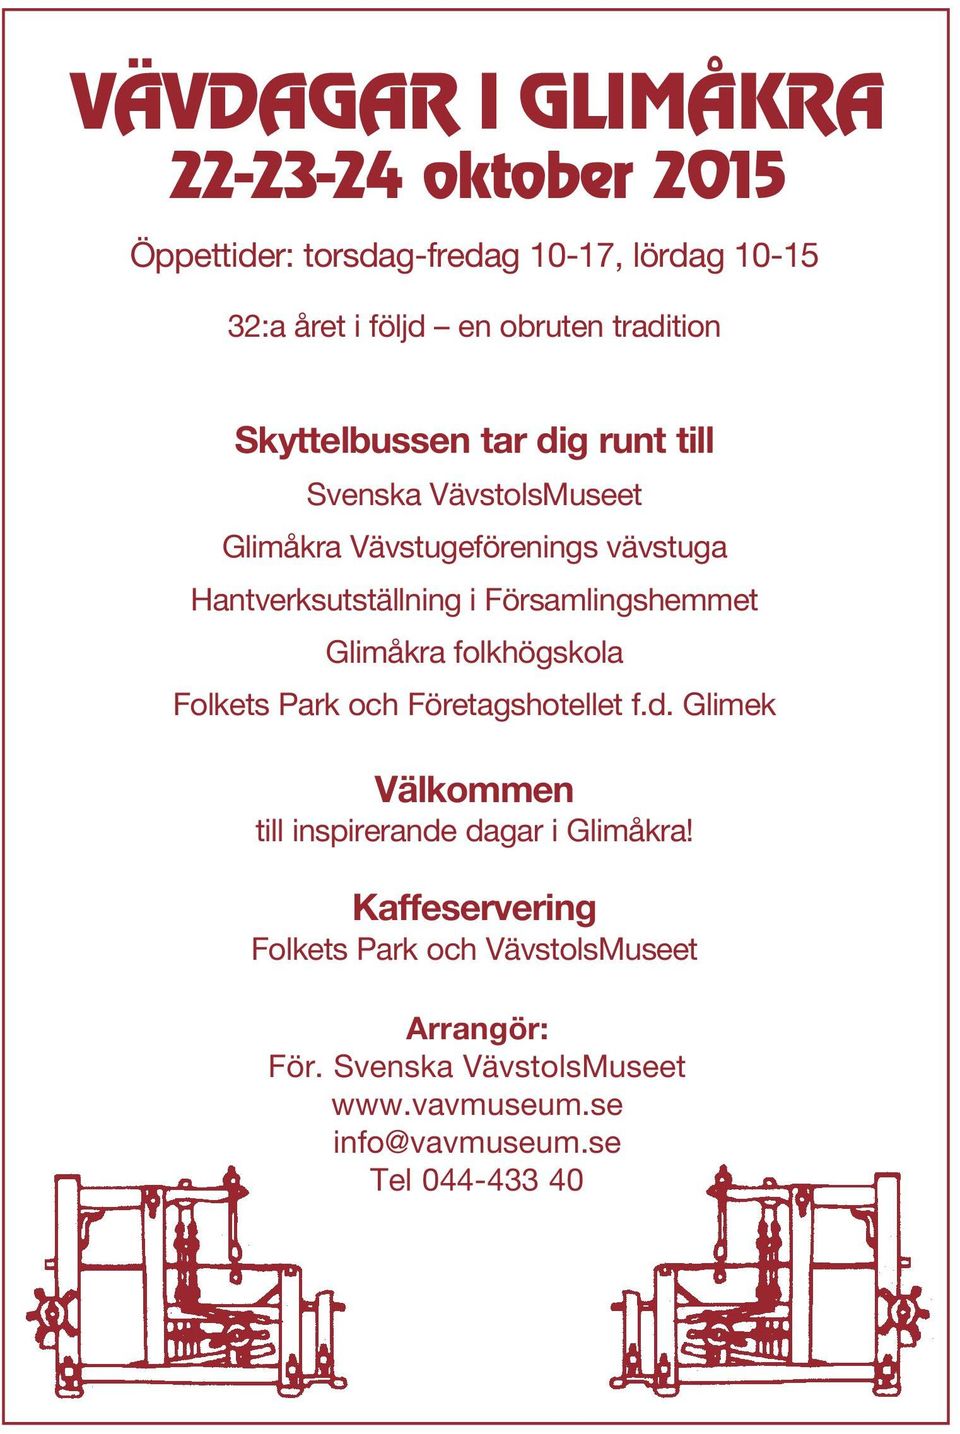 Församlingshemmet Glimåkra folkhögskola Folkets Park och Företagshotellet f.d.